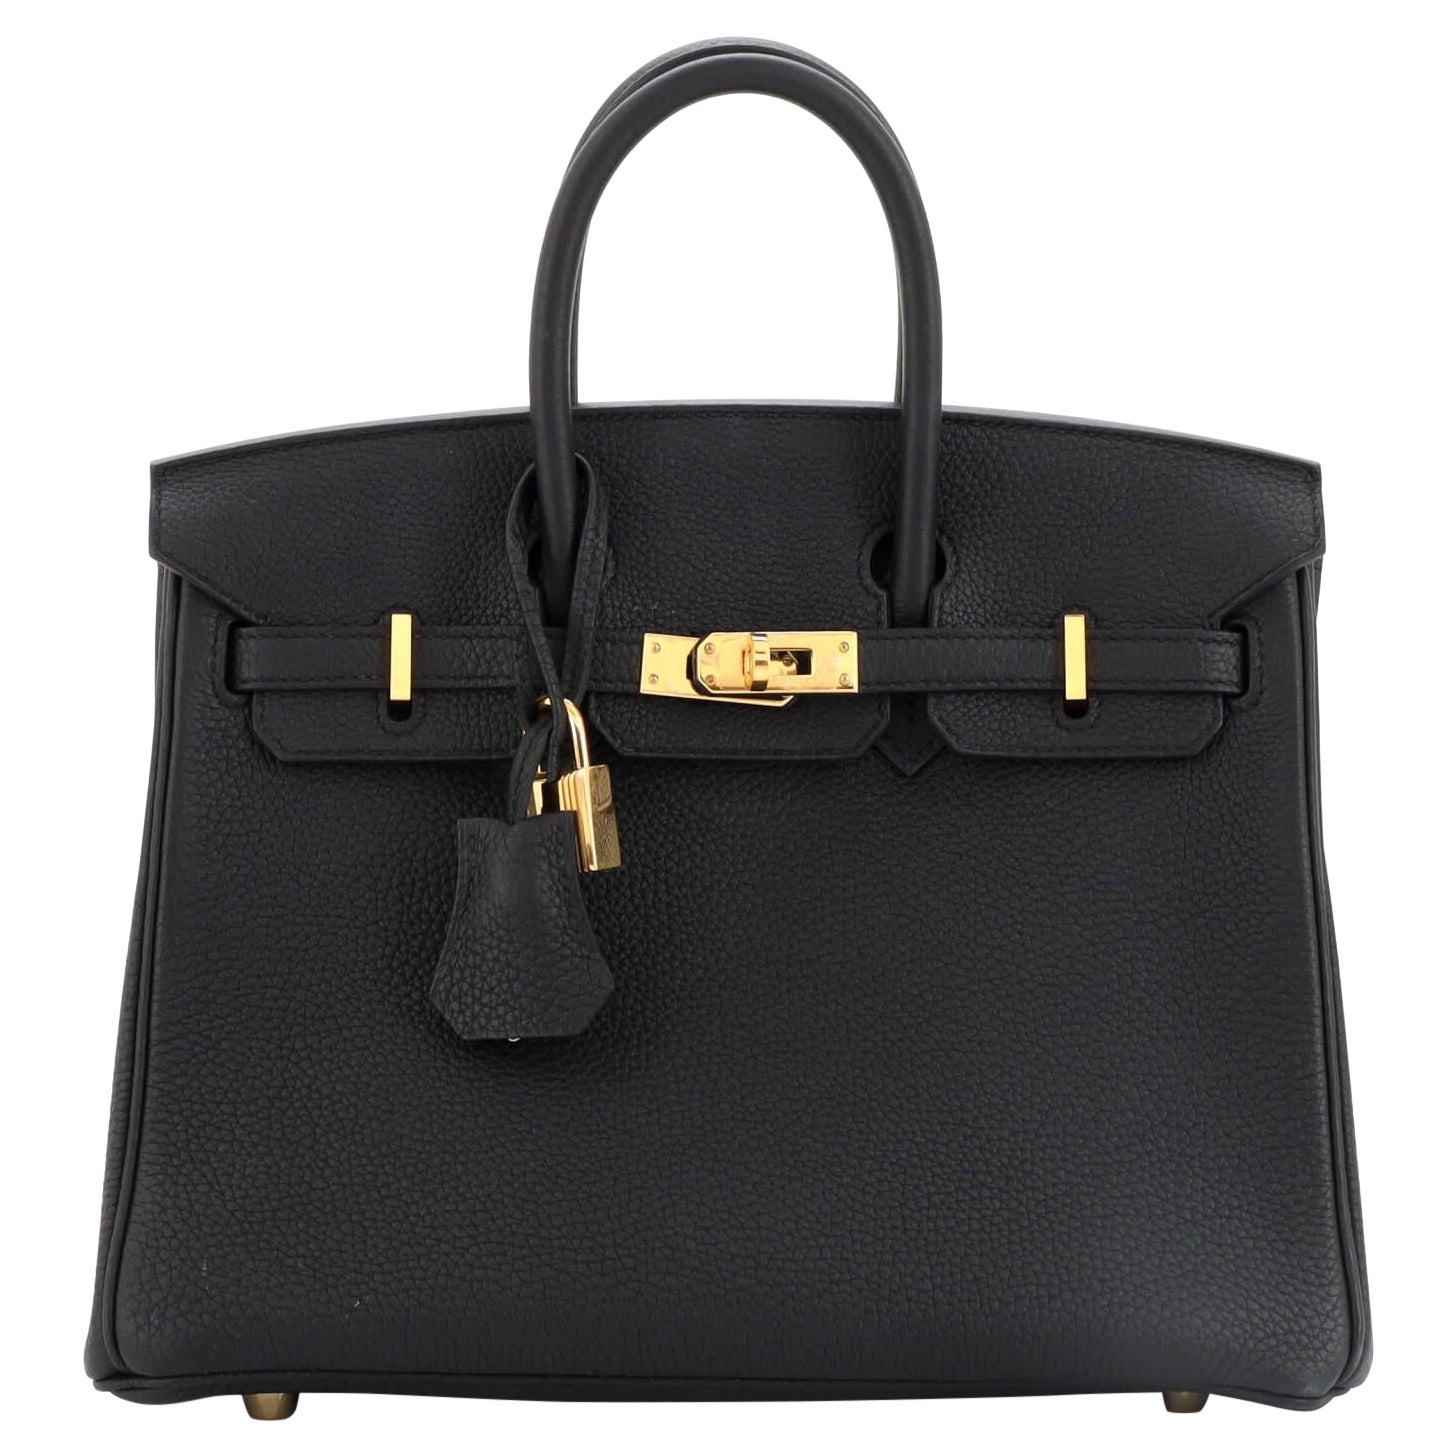 Hermes Birkin Handbag Black Togo with Gold Hardware 25